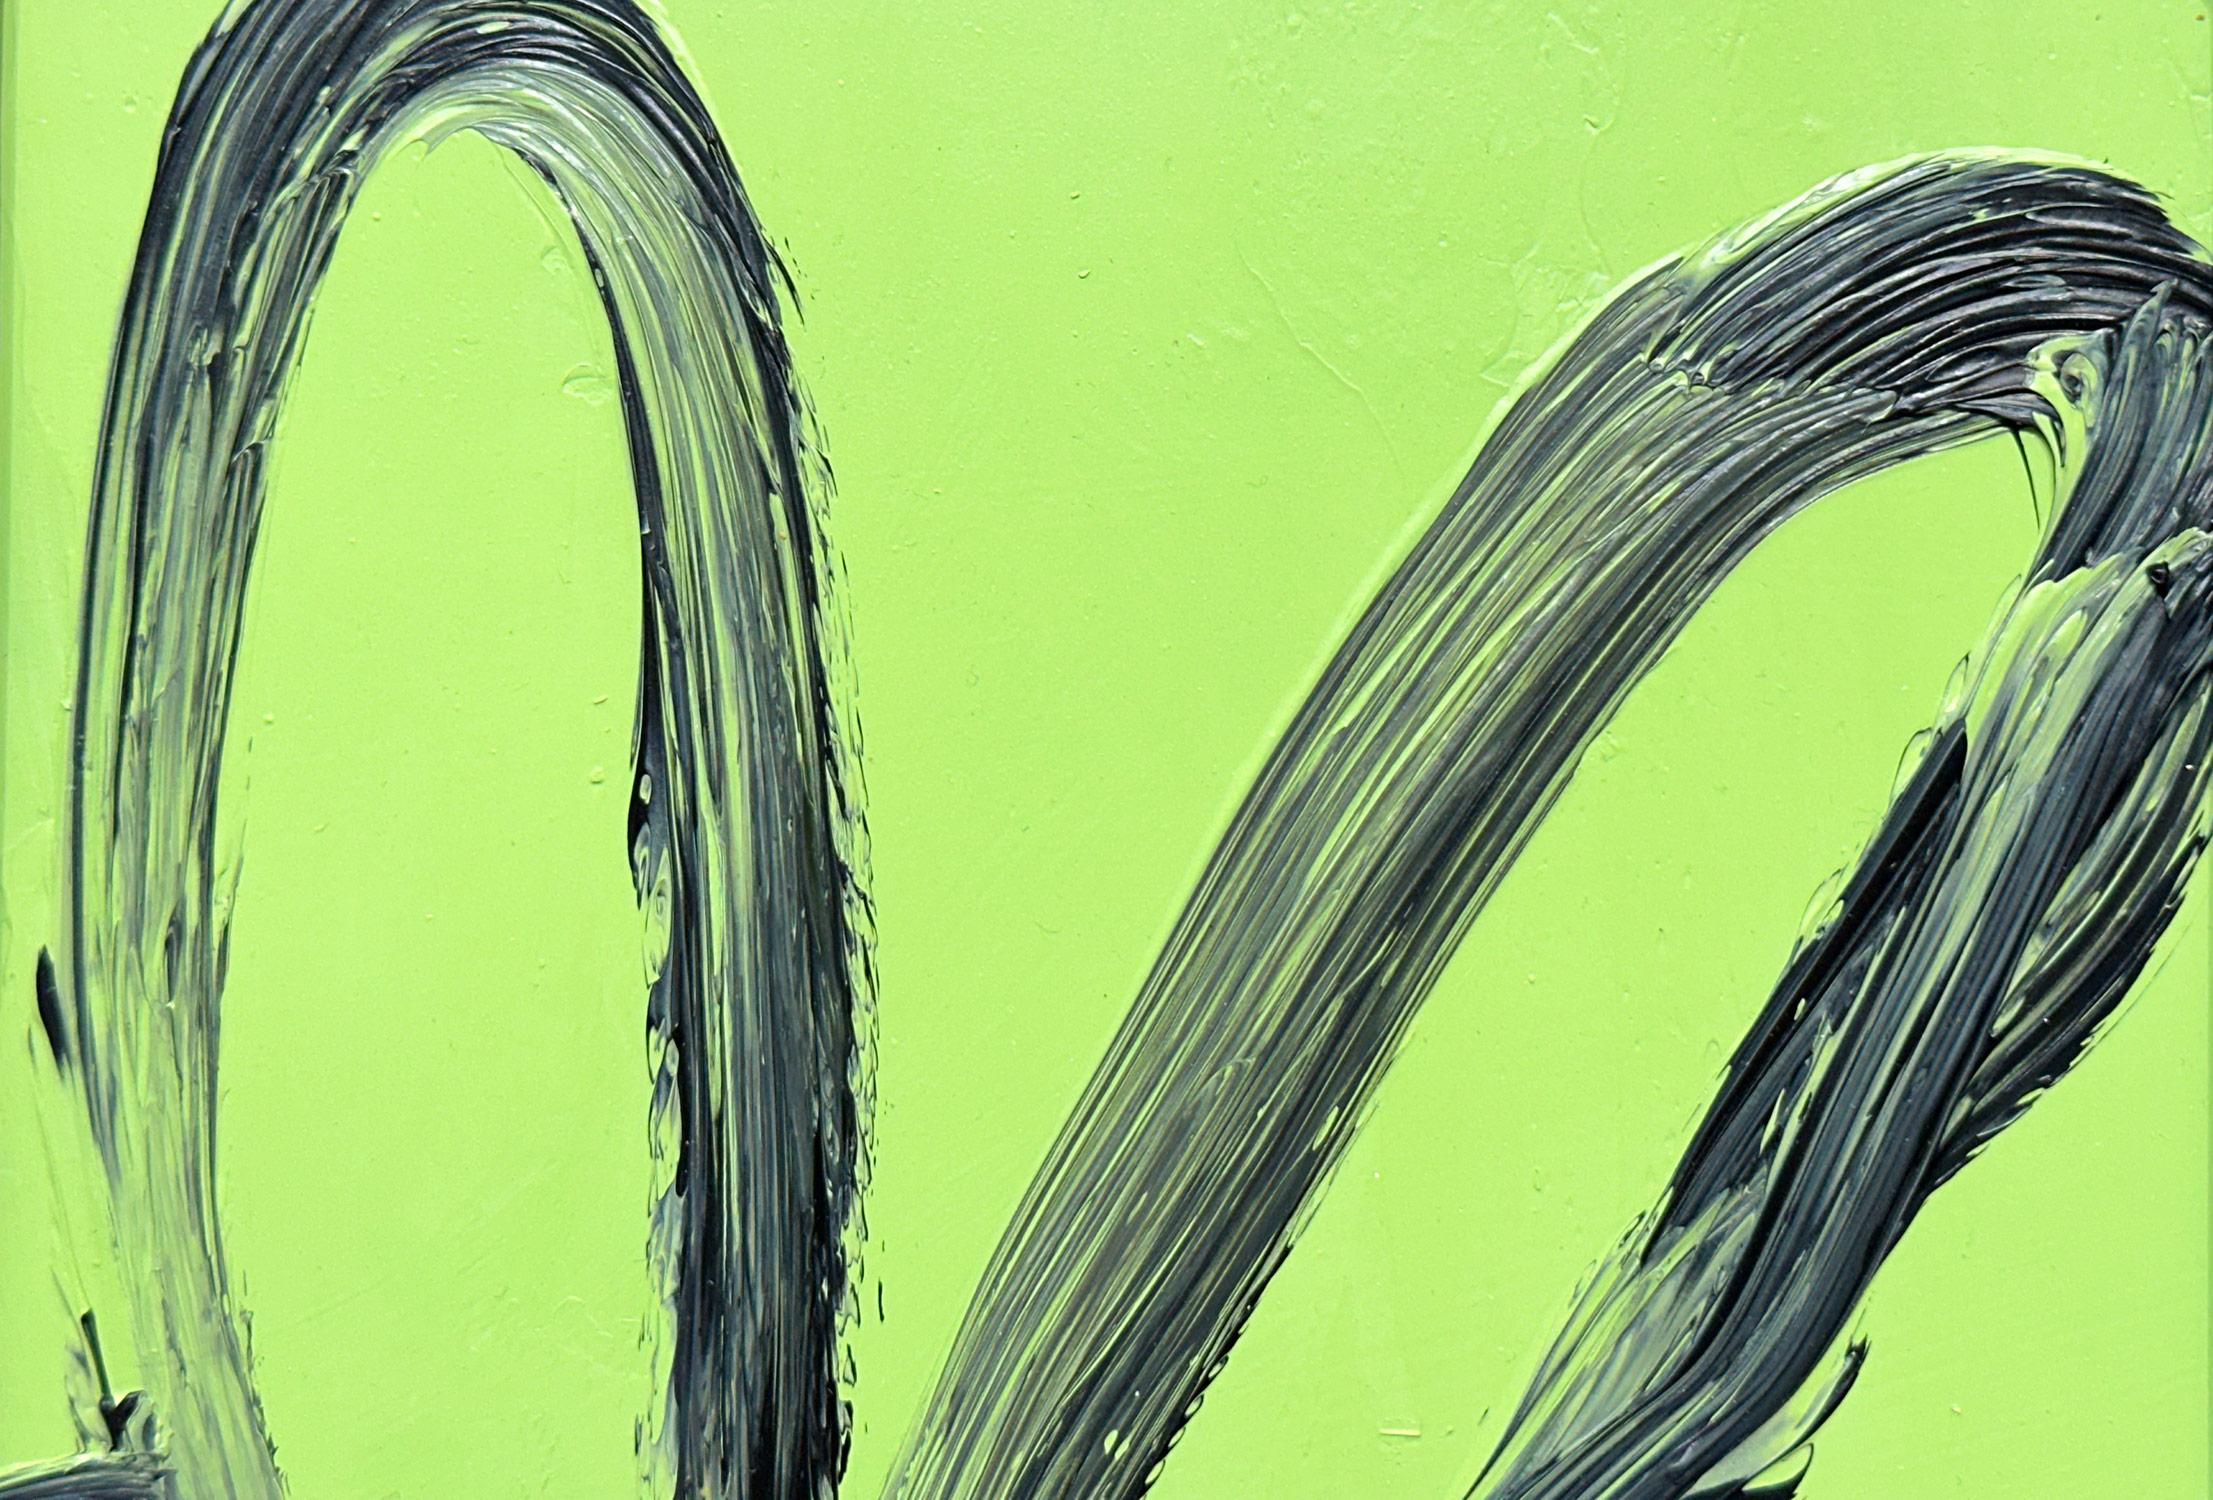 Eine wunderbare Komposition eines der ikonischsten Themen von Slonem, nämlich Hasen. Dieses Werk zeigt eine gestische Figur eines schwarzen Hasen auf mintgrünem Hintergrund mit dickem Farbauftrag. Inspiriert von der Natur und einer echten Liebe zu